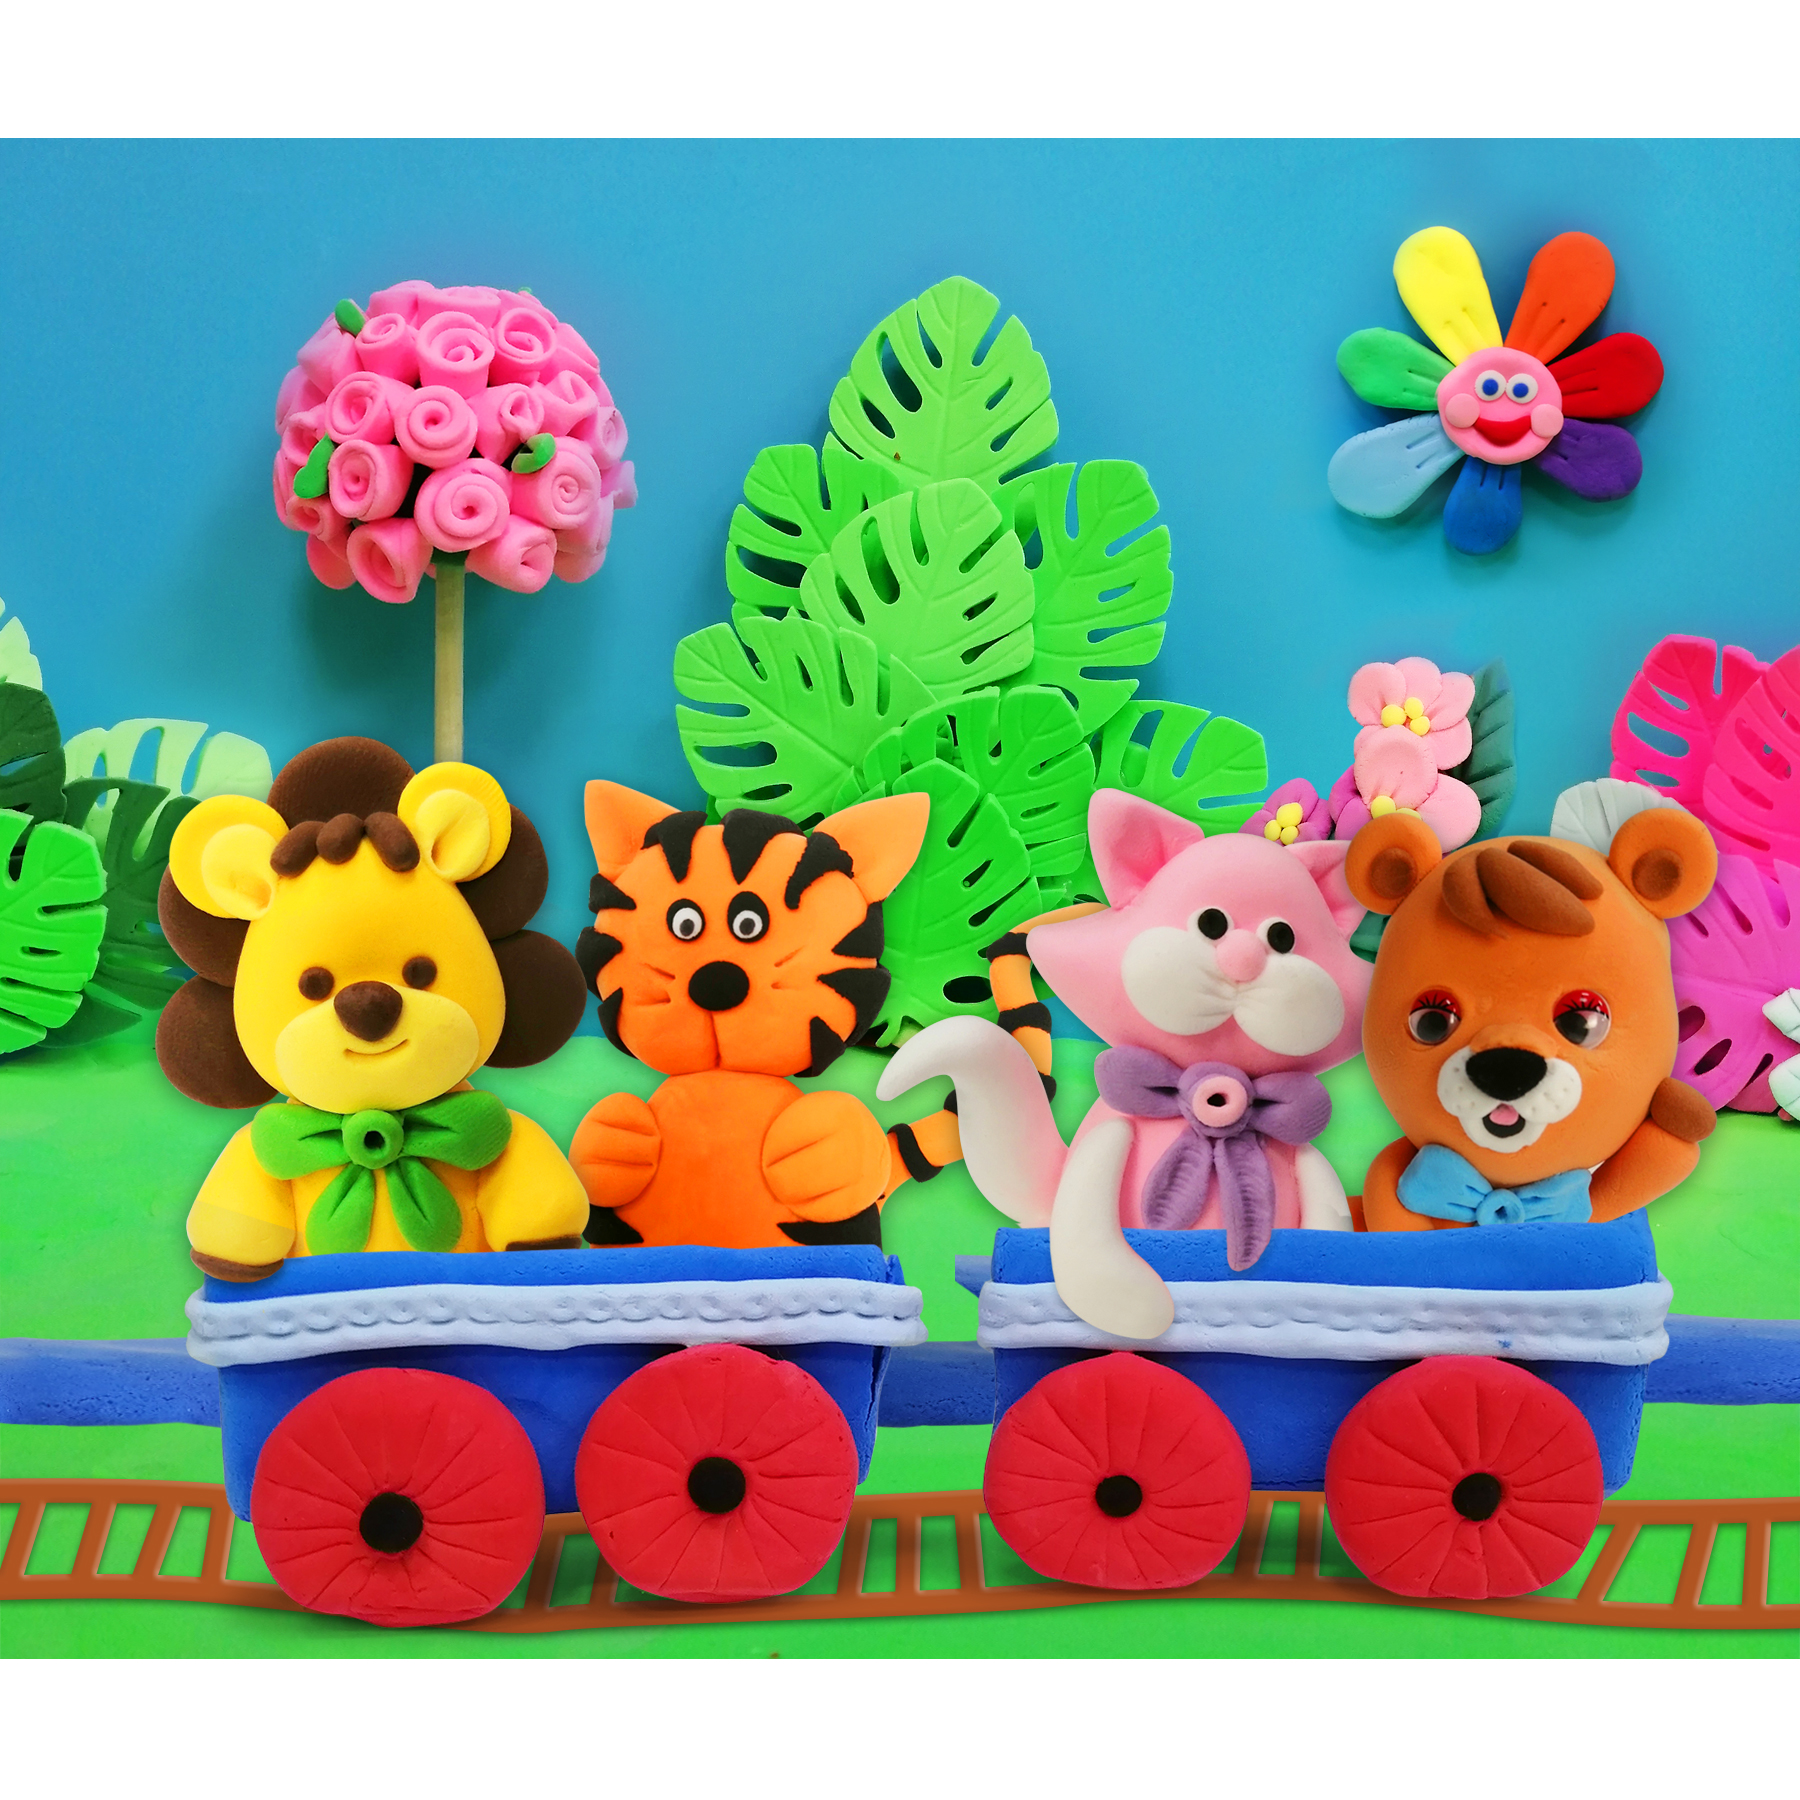 Масса для лепки Kiki воздушный пластилин в коробке 24 цвета для детей в подарок - фото 8